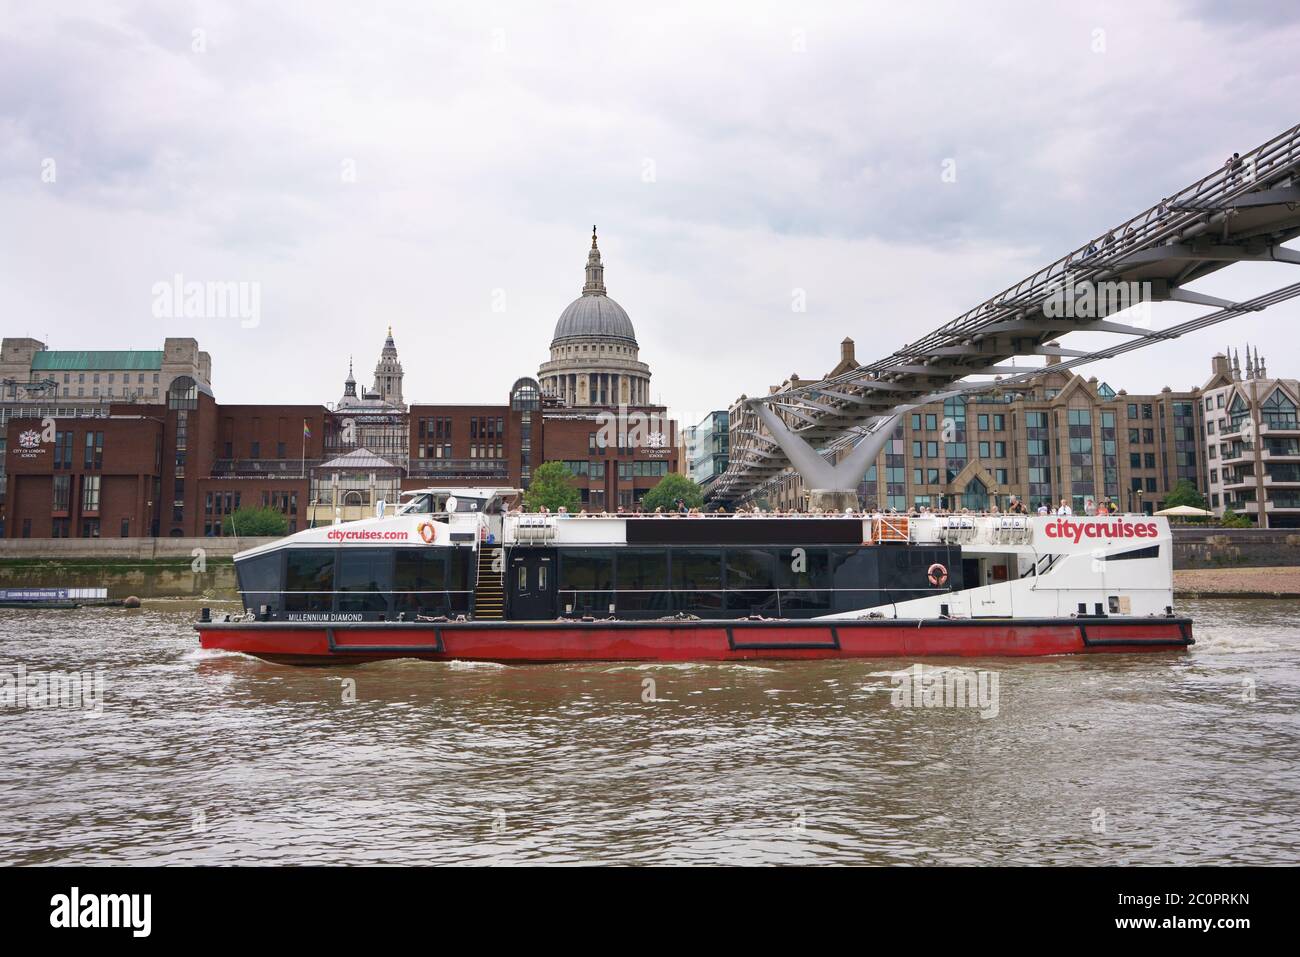 Crociere della città di Londra, tour turistico in barca sul Tamigi a Londra con Millennium Bridge e la cattedrale di St Paul. Foto Stock